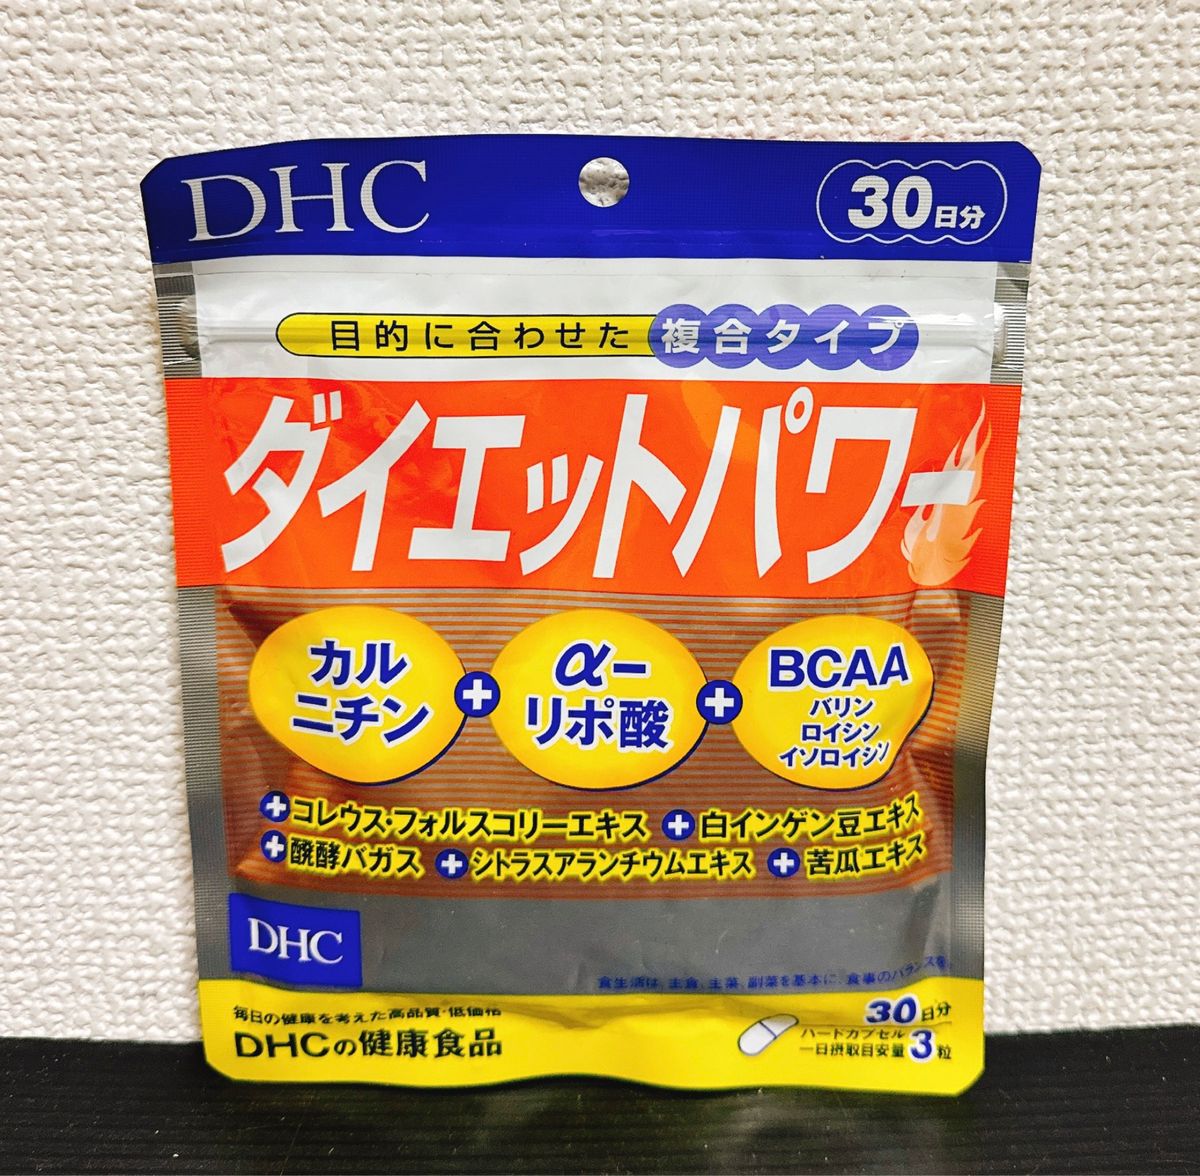 DHC ダイエットパワー 30日分